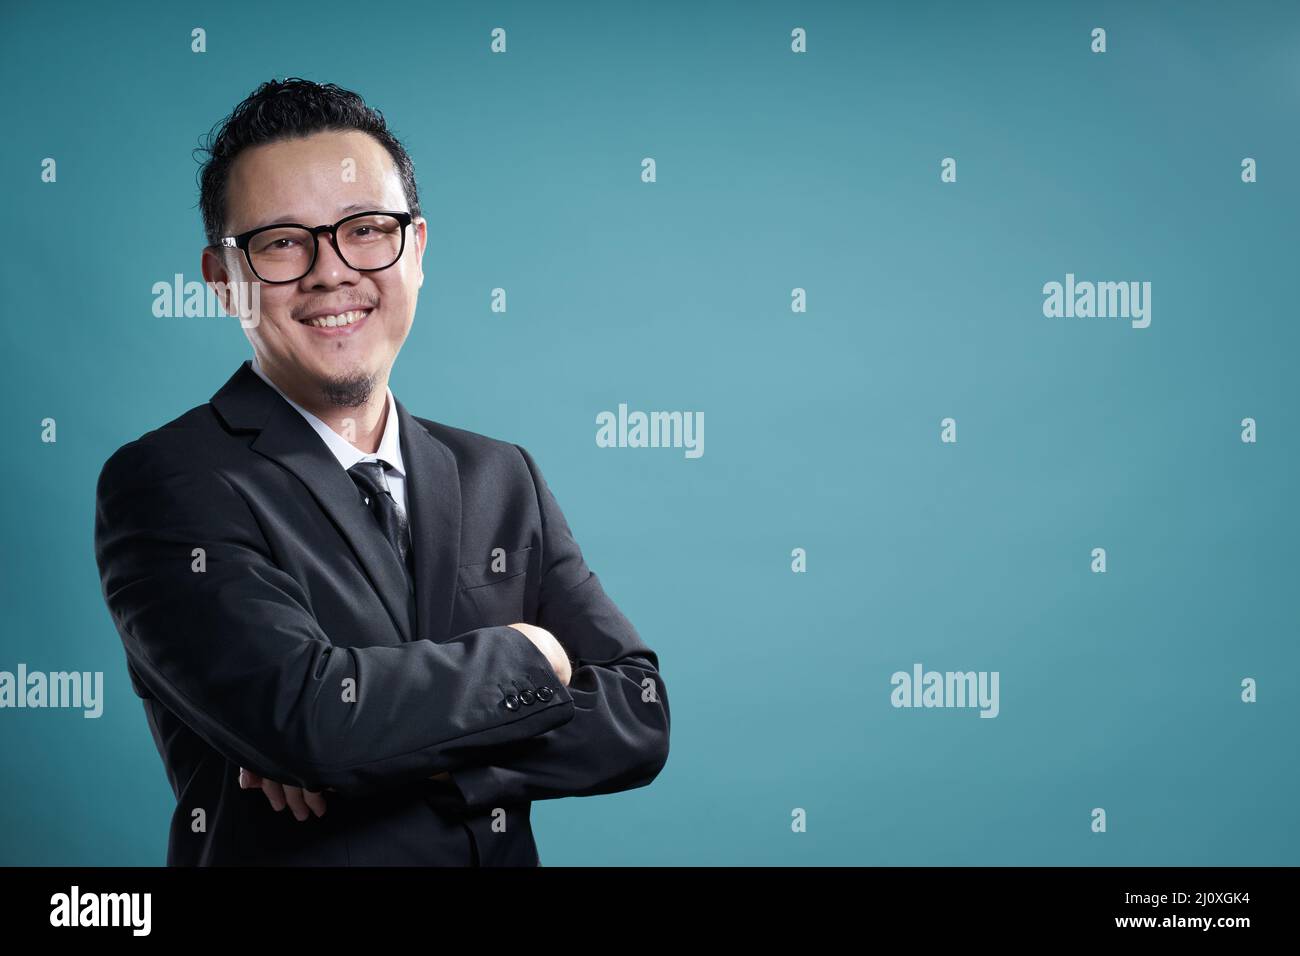 Asian businessman portrait Stock Photo